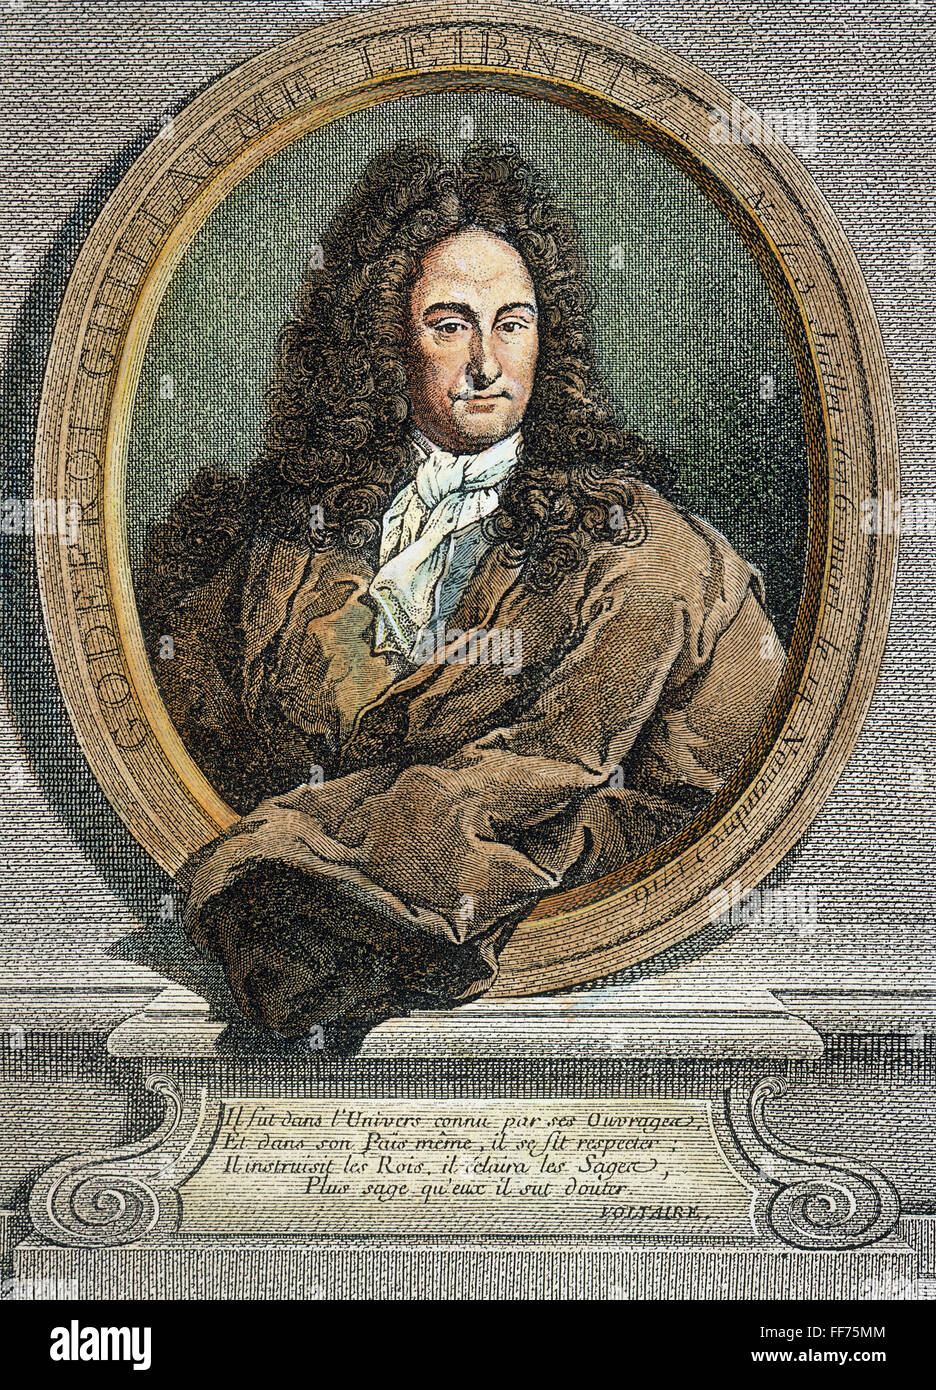 GOTTFRIED VON LEIBNIZ /n(1646-1716). German philosopher and mathematician. Copper engraving, 1745, by ╔tienne Ficquet. Stock Photo